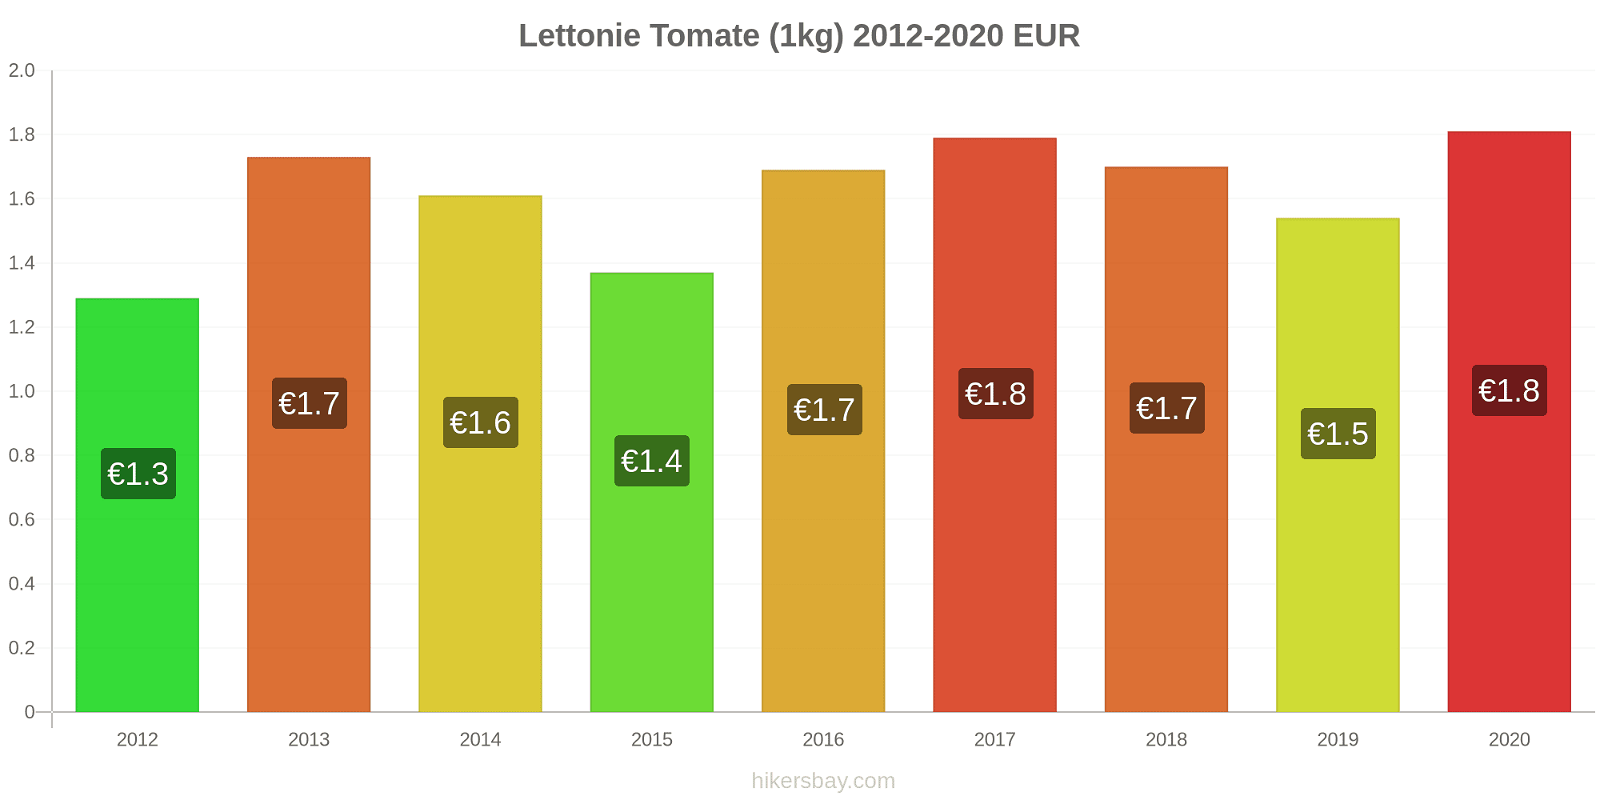 Lettonie changements de prix Tomate (1kg) hikersbay.com